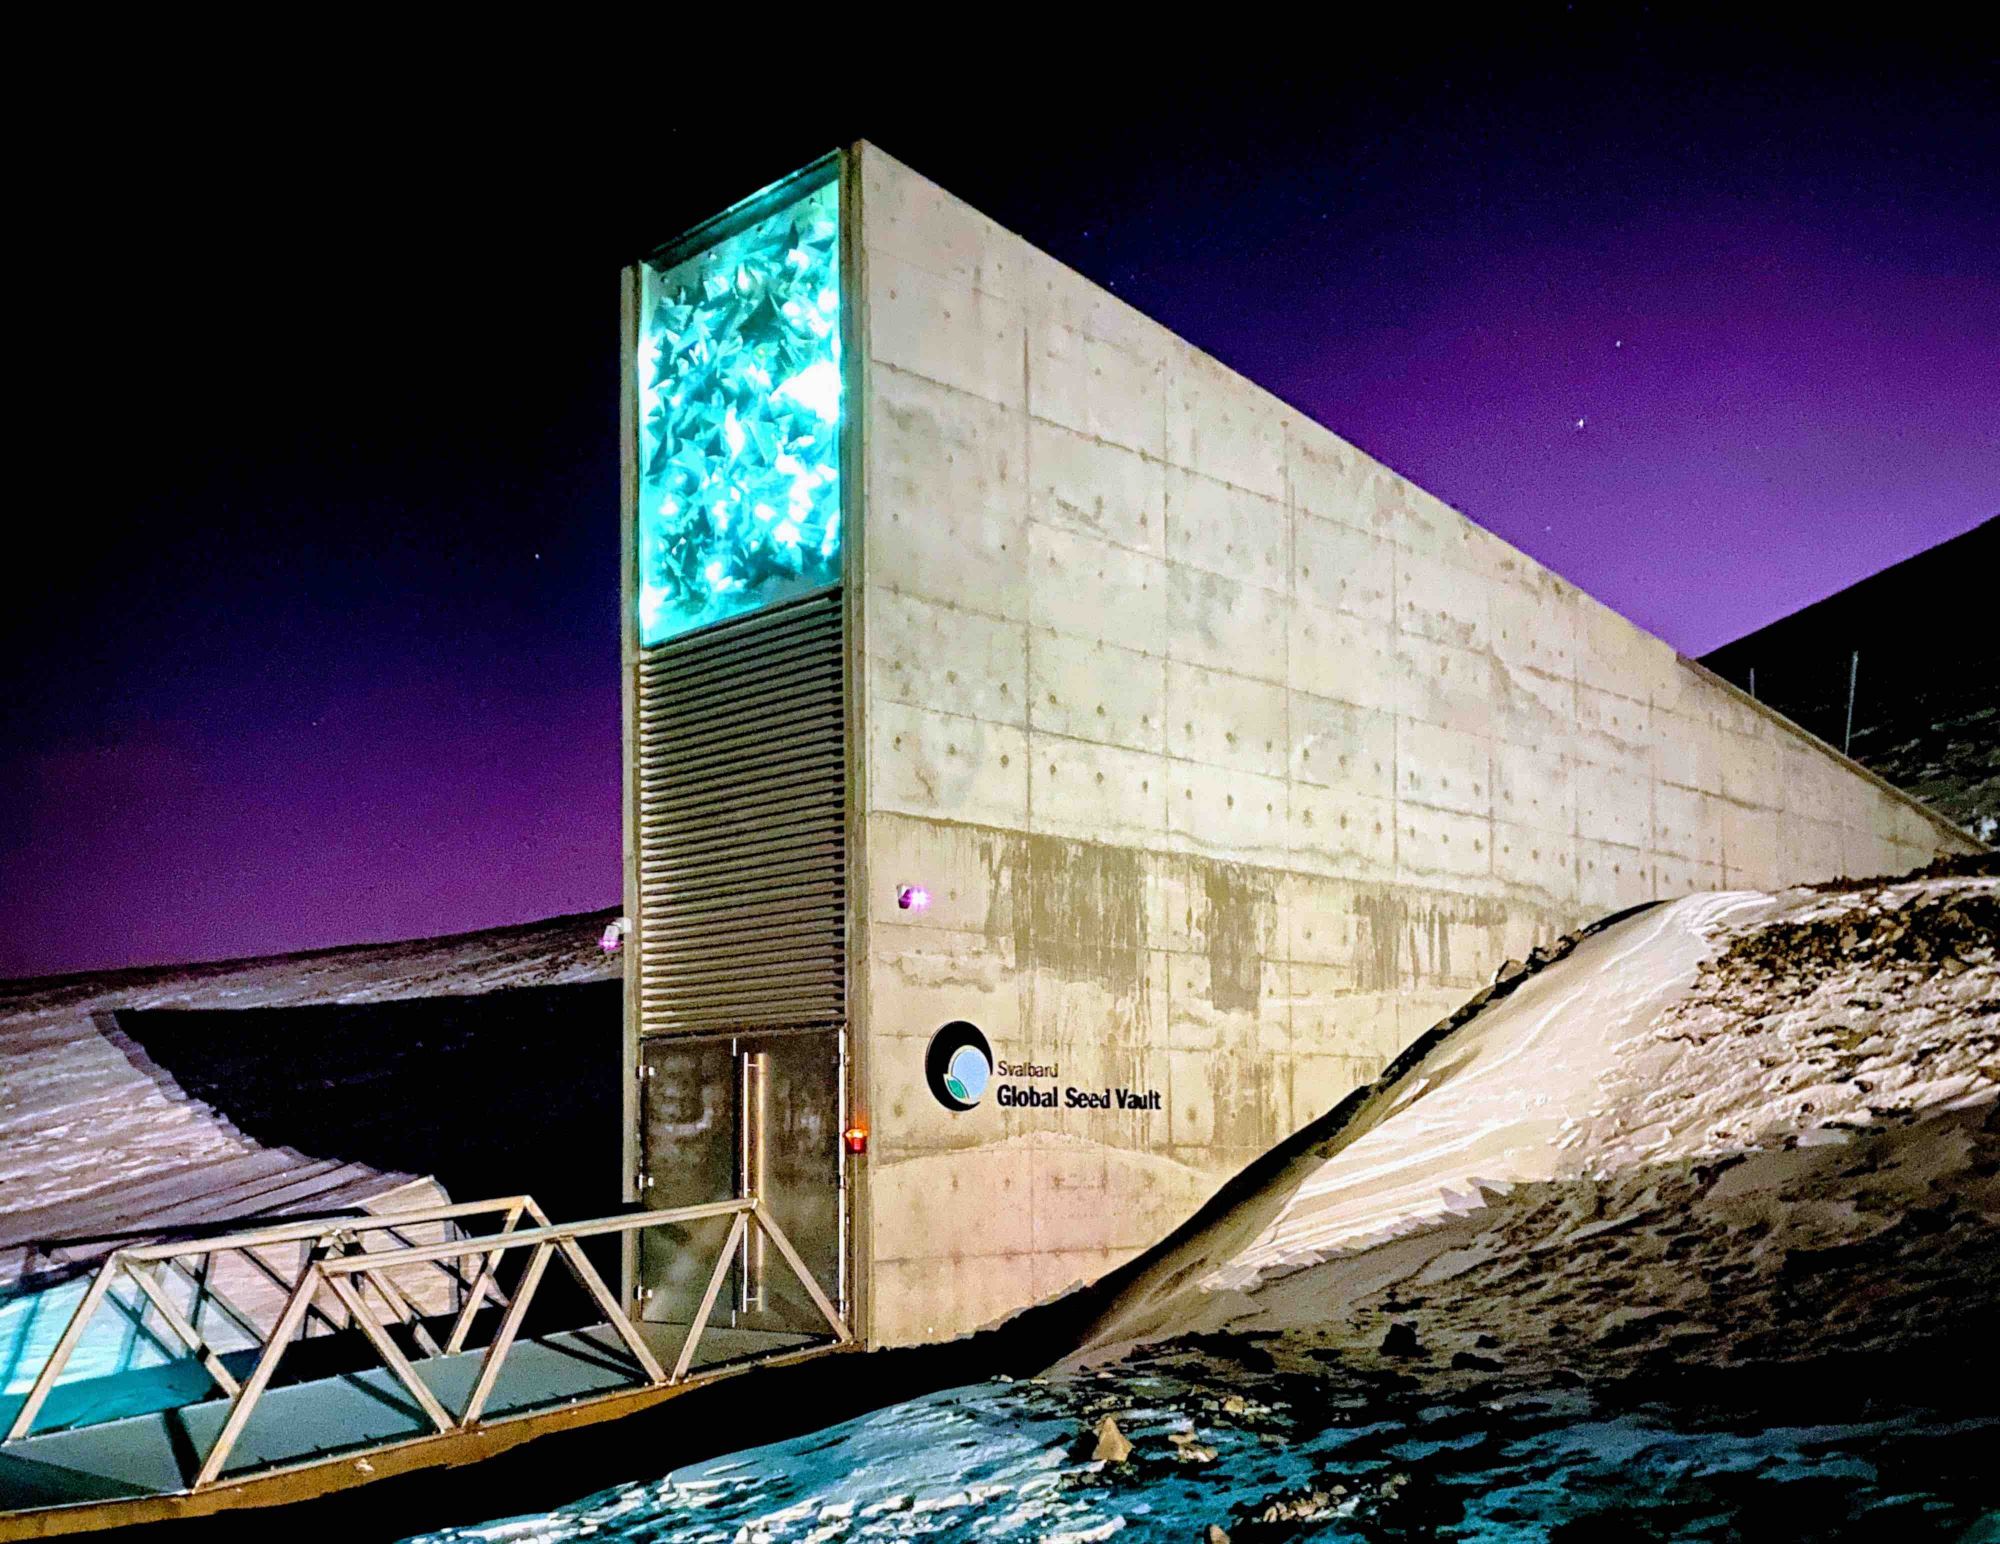 Помимо Всемирного семенохранилища, на Шпицбергене действует Arctic World Archive, где сохраняются важнейшие цифровые данные